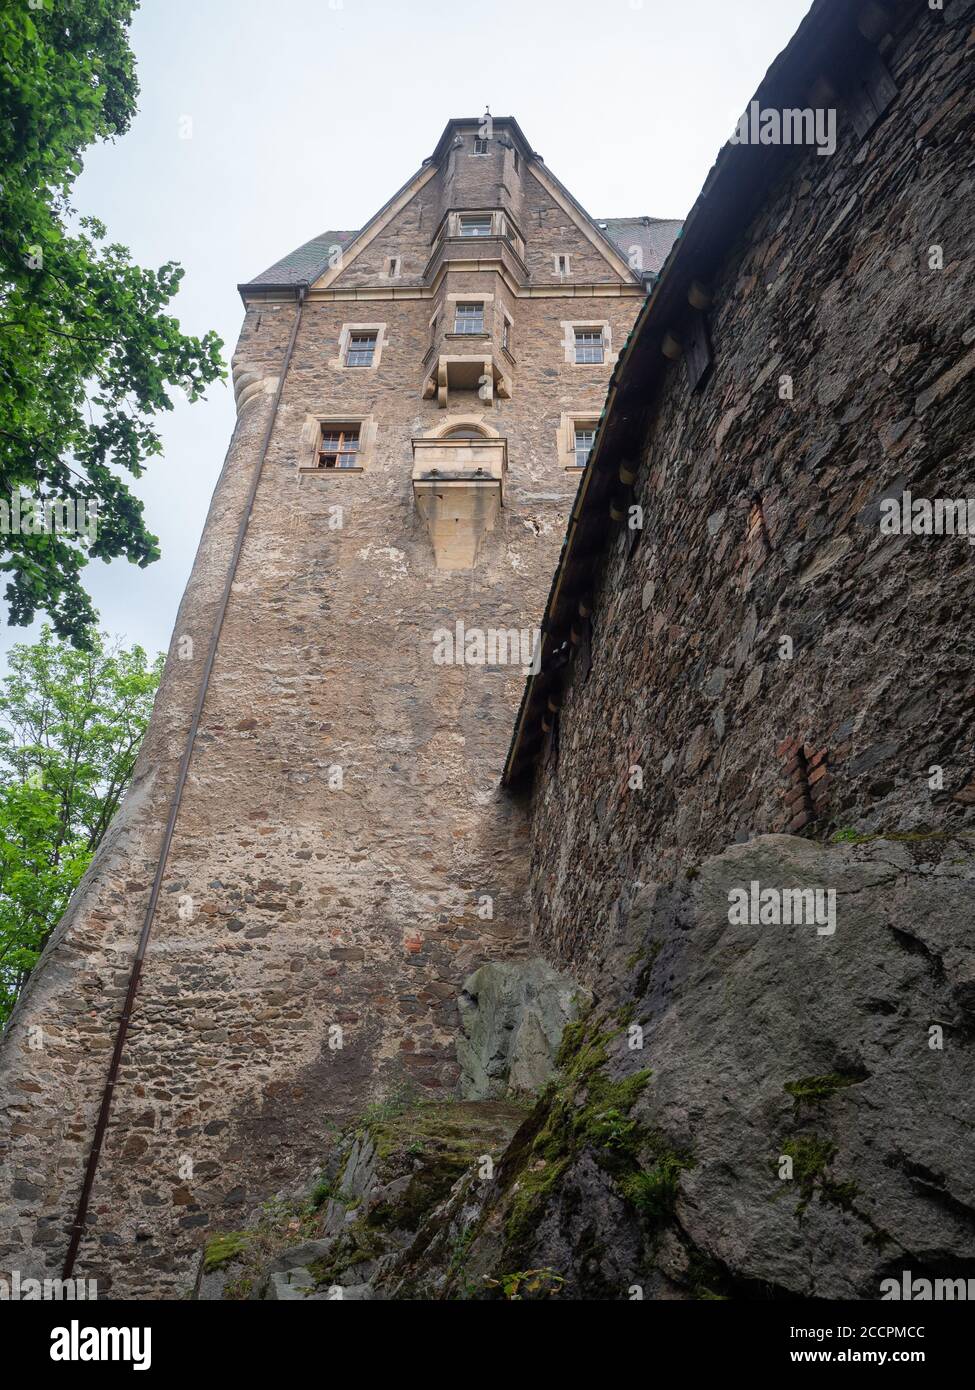 Czocha, Polonia-22 luglio 2019: Vista ravvicinata e verso l'alto sul Castello di Czocha dall'esterno delle mura difensive. Castello difensivo del XIII secolo, pietra A. Foto Stock